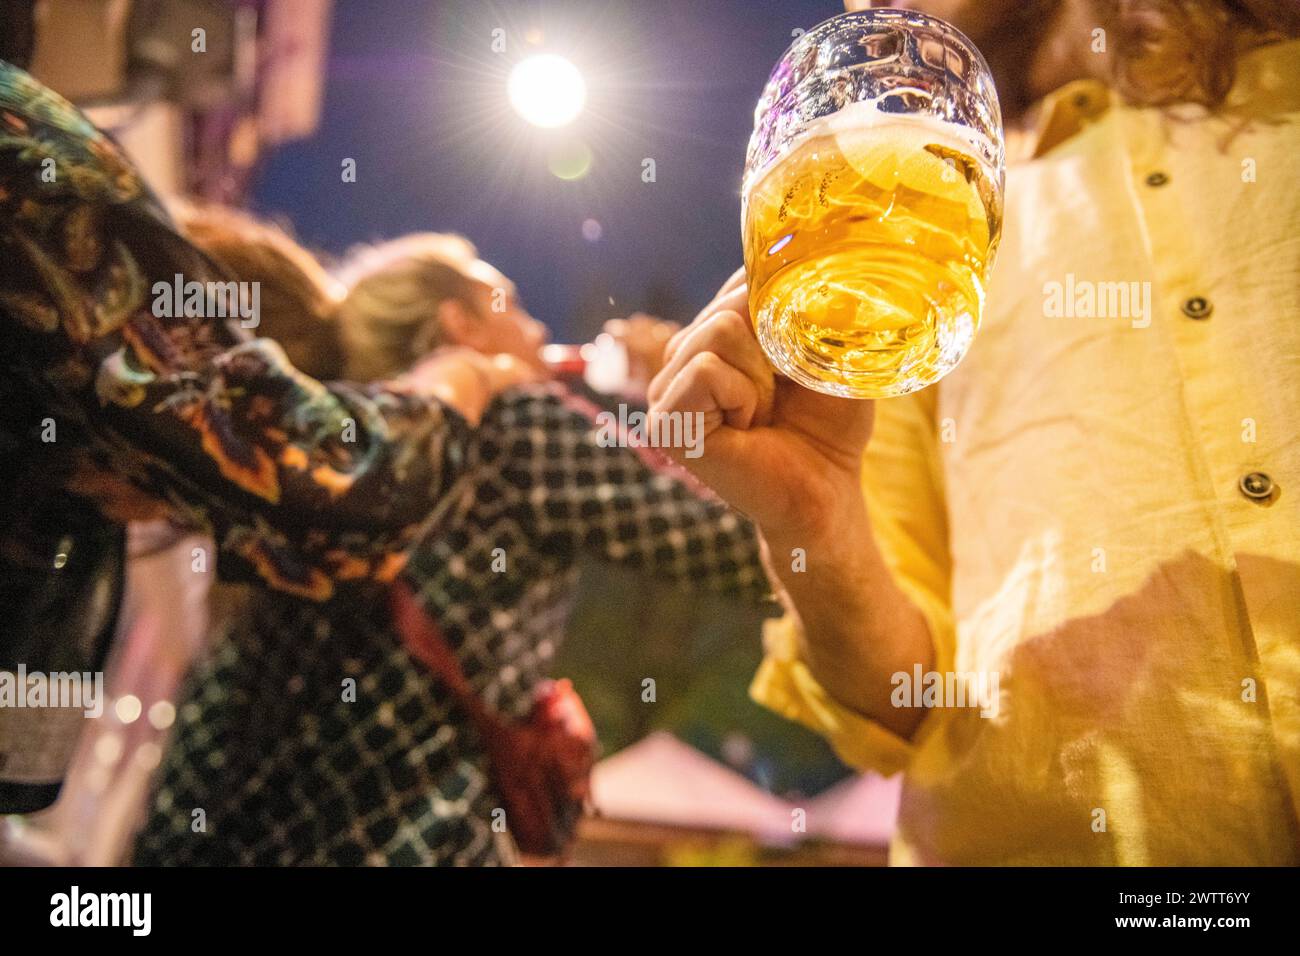 Feiern Sie die Nacht mit einem erhöhten Glas Bier in einer lebhaften Straßenlage. Stockfoto